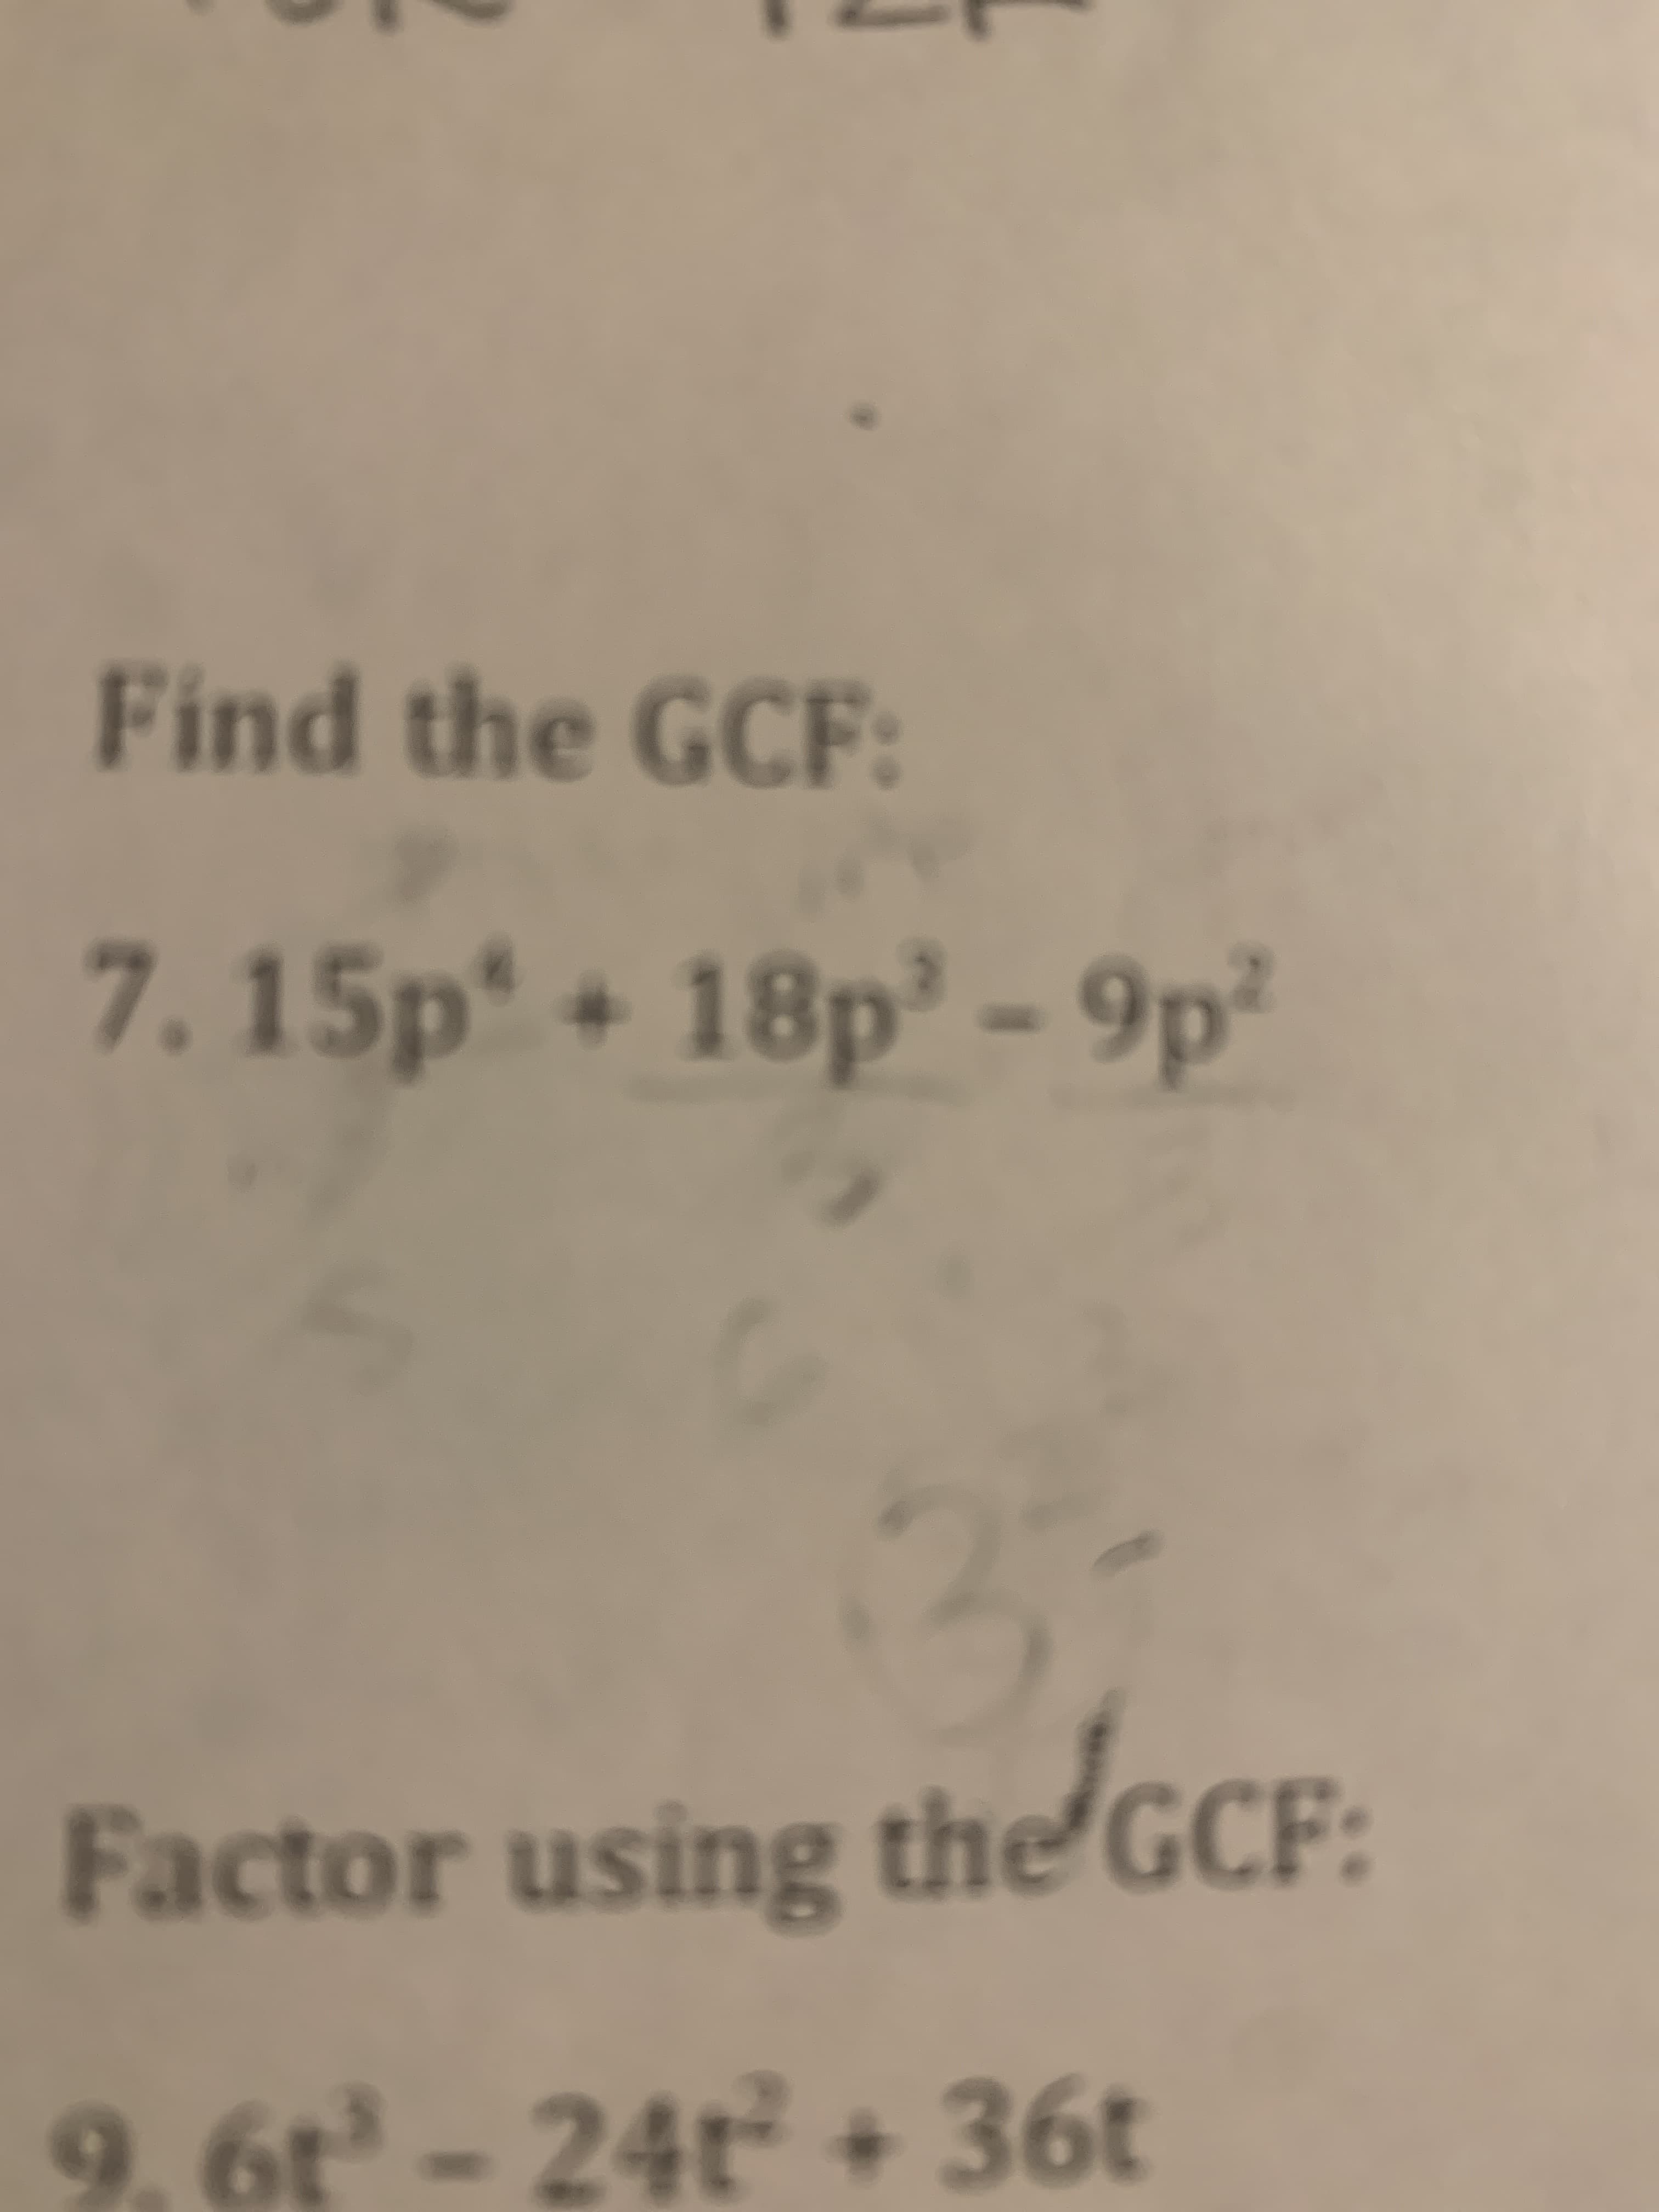 Find the GCF:
7. 15p + 18p² - 9p²
actor using
usine the GCF:
